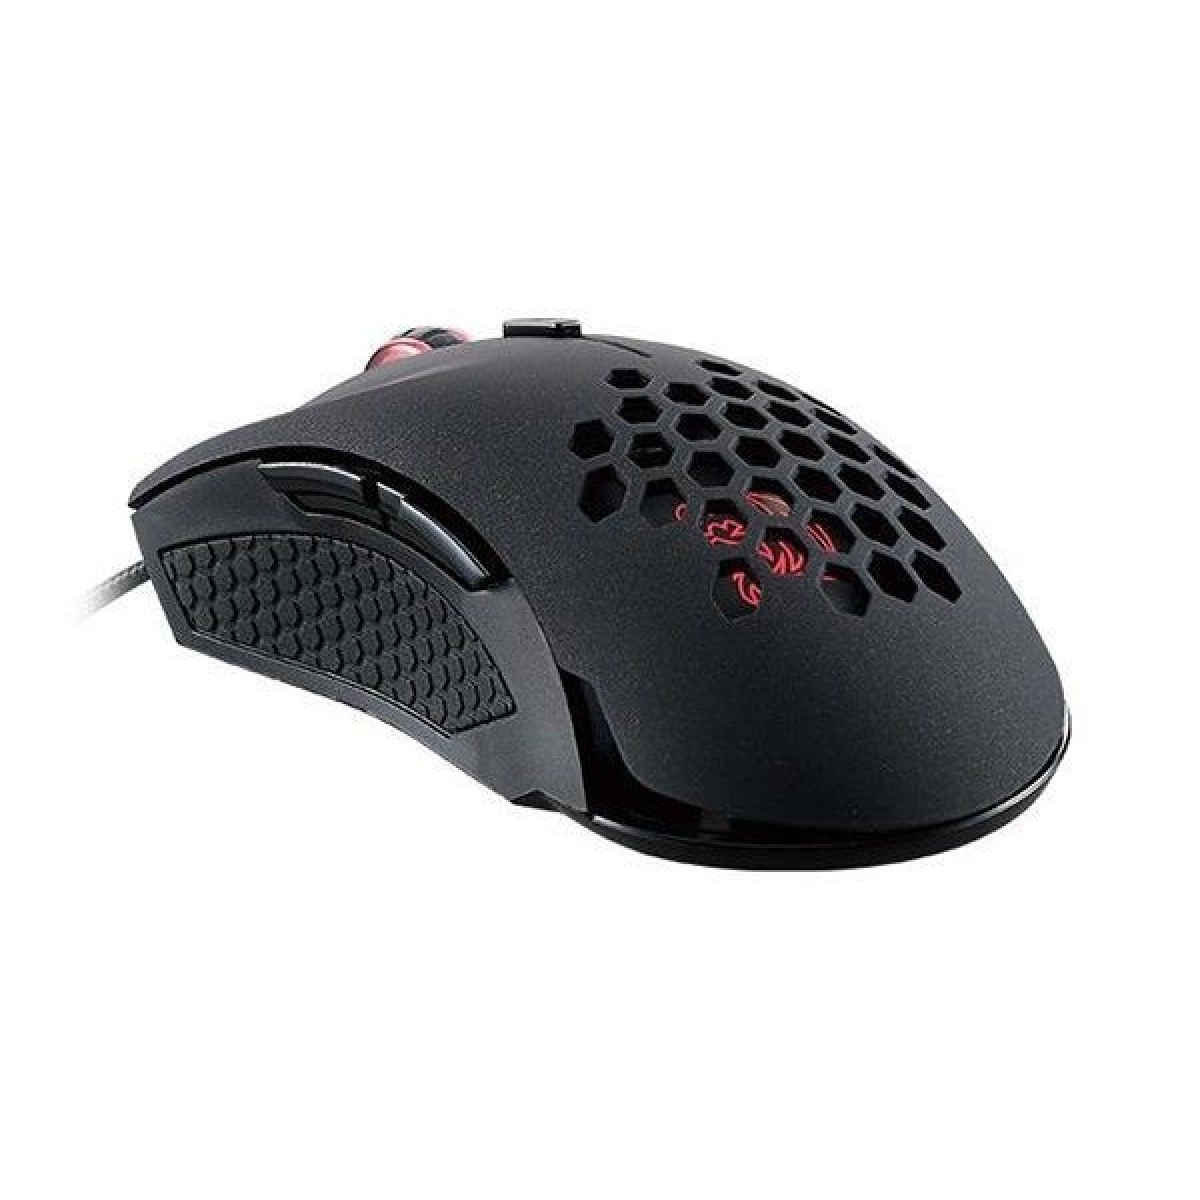 Mouse Thermaltake TT Sports Ventus X Laser Black Gaming MO-VEX-WDLOBK-01